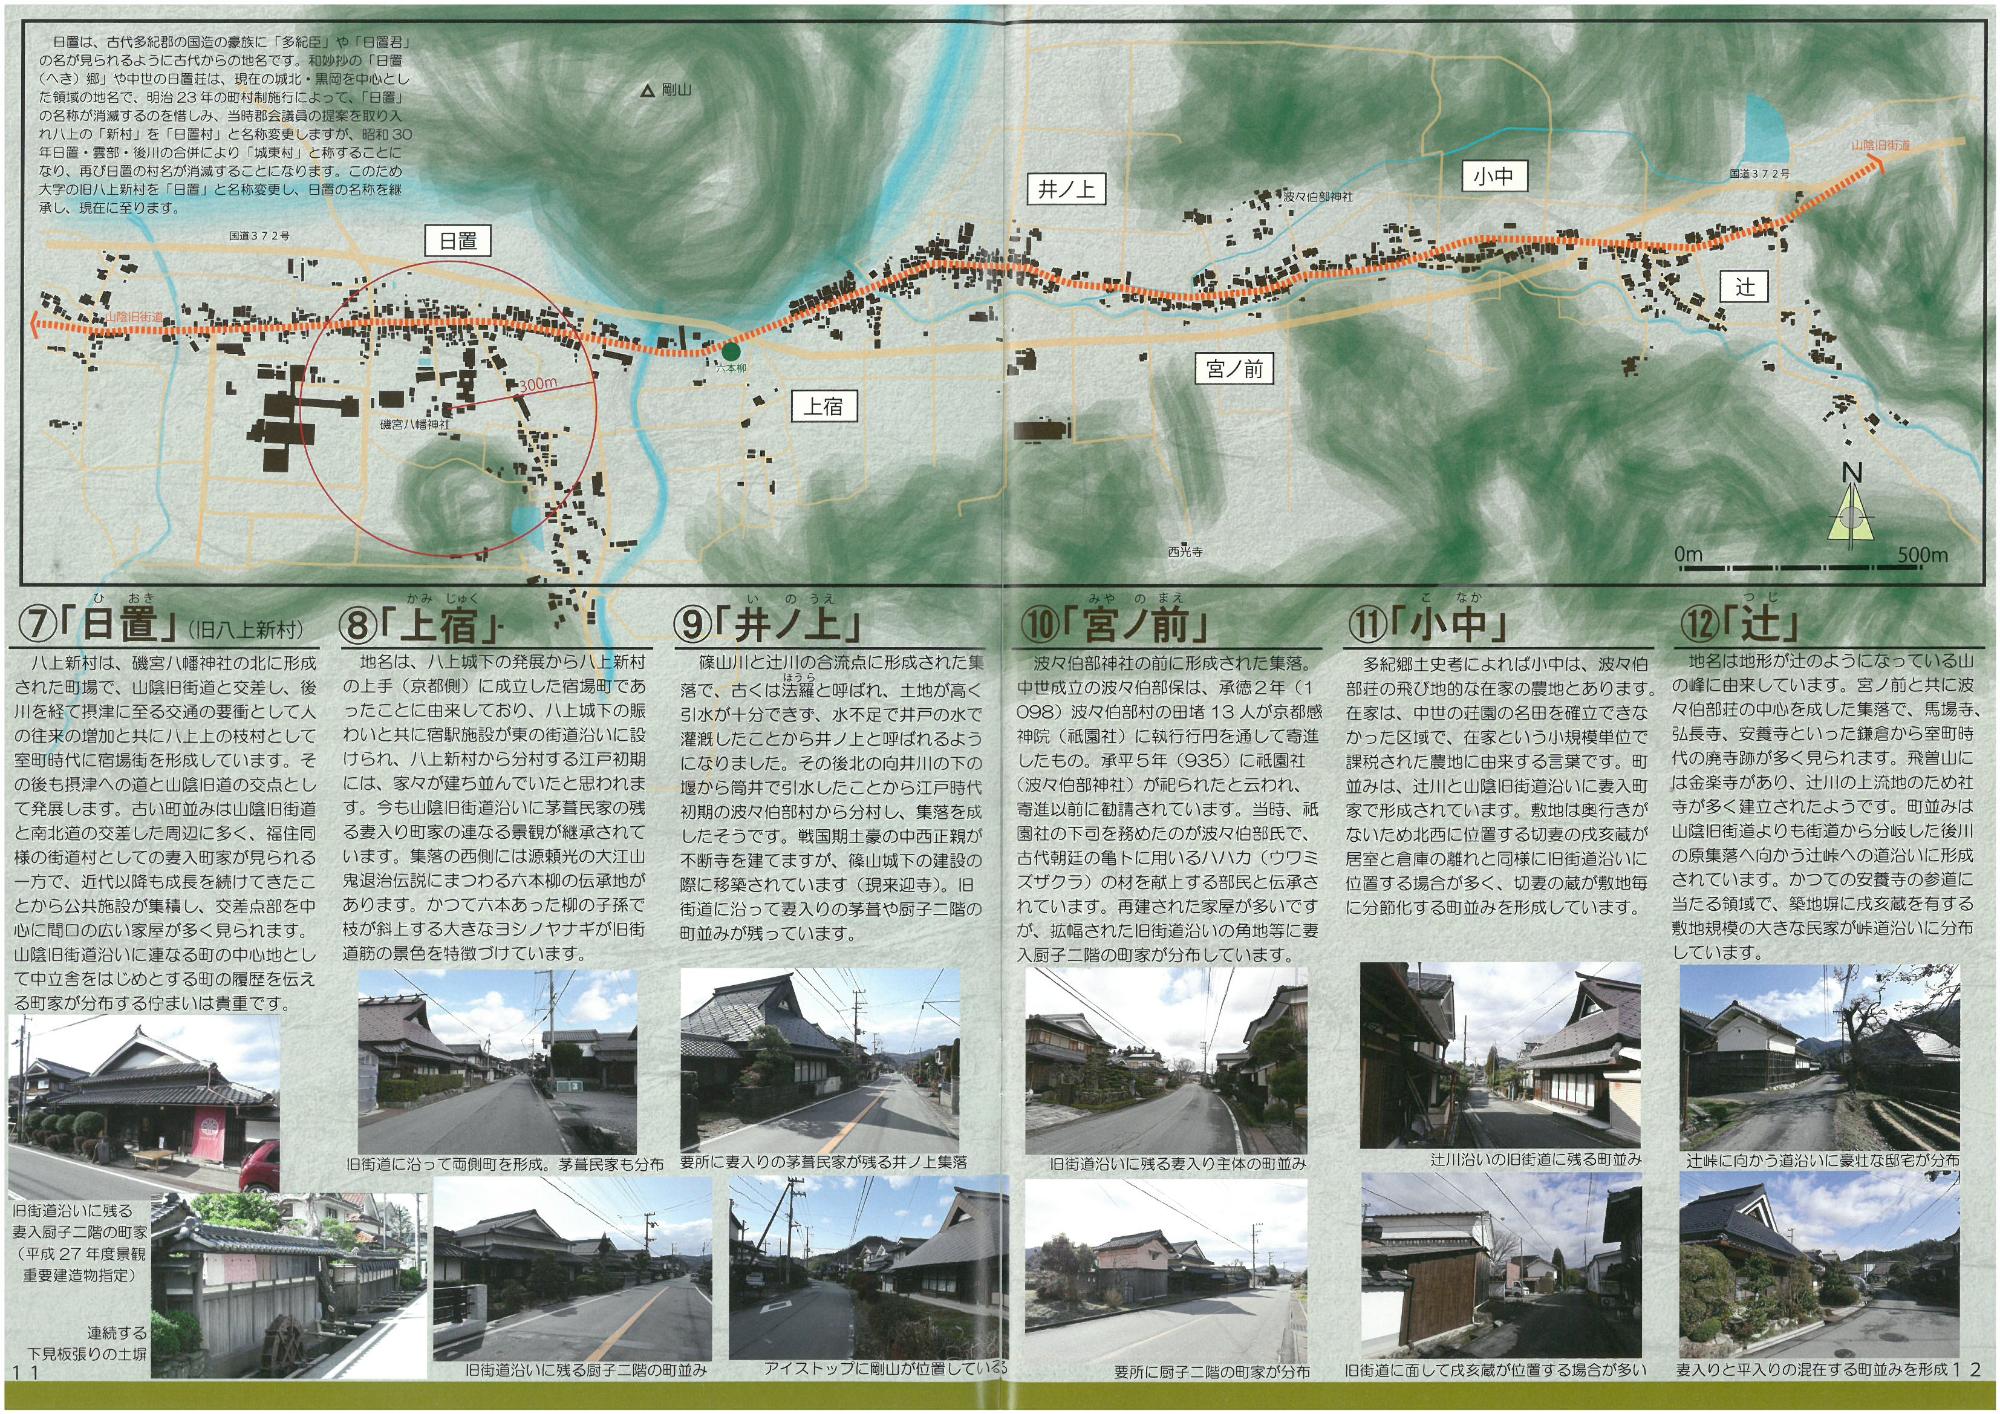 丹波篠山市東部の街道集落を紹介しているページ。